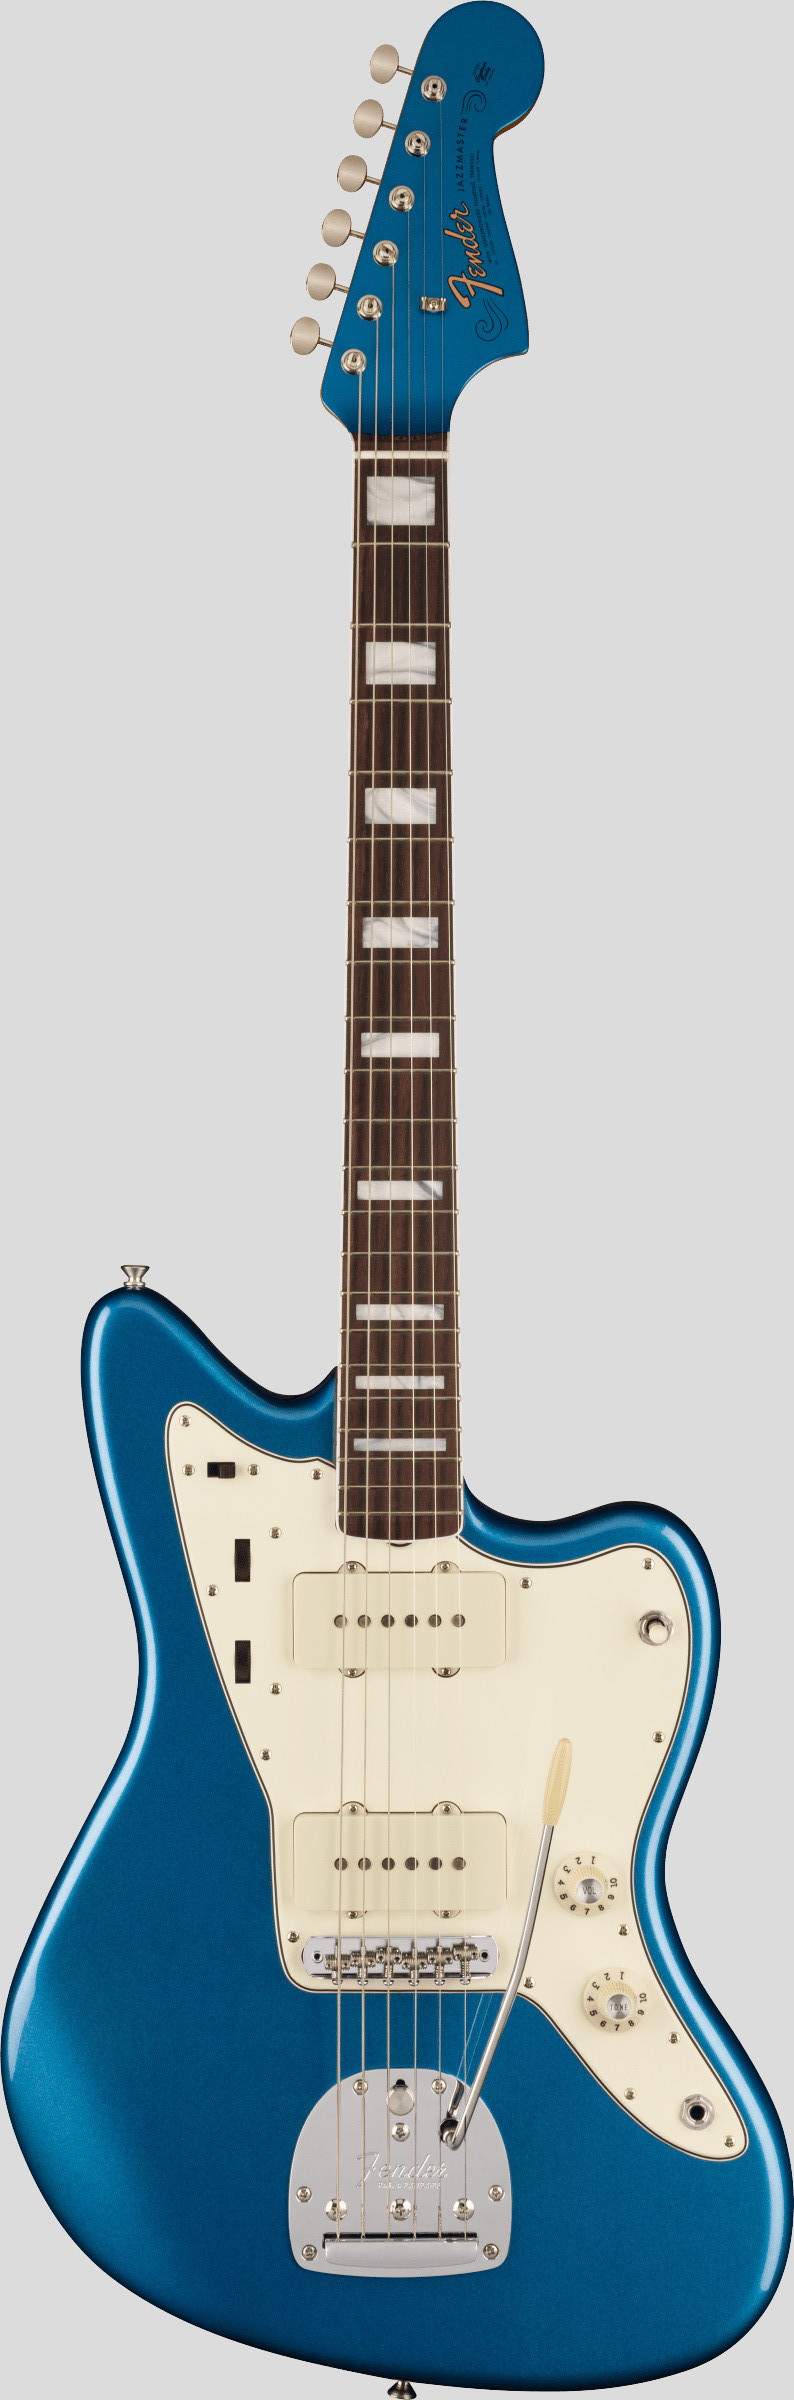 Fender American Vintage II 1966 Jazzmaster Lake Placid Blue 1